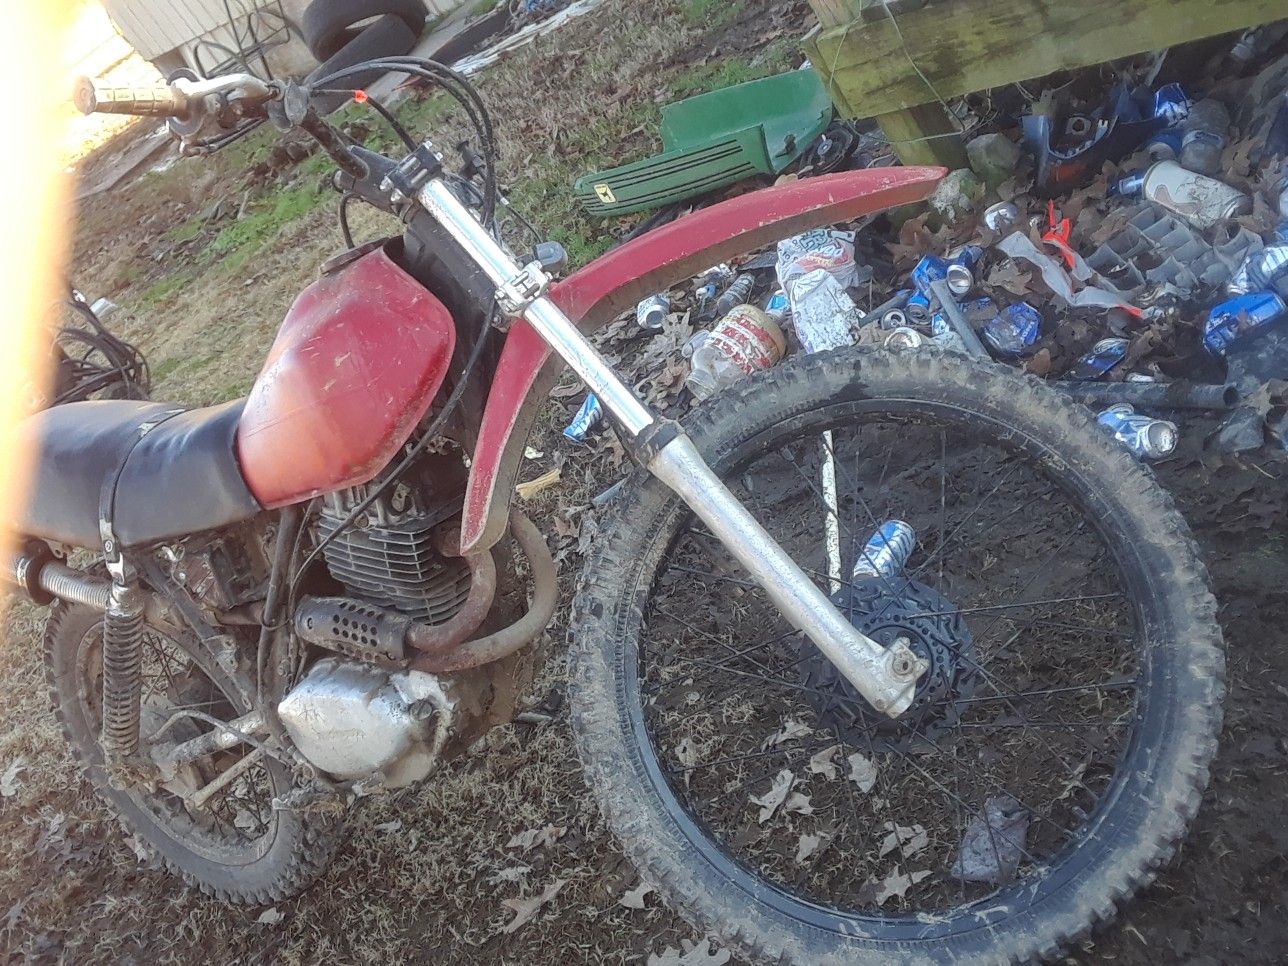 Photo 1982 honda xl500 dirt bike